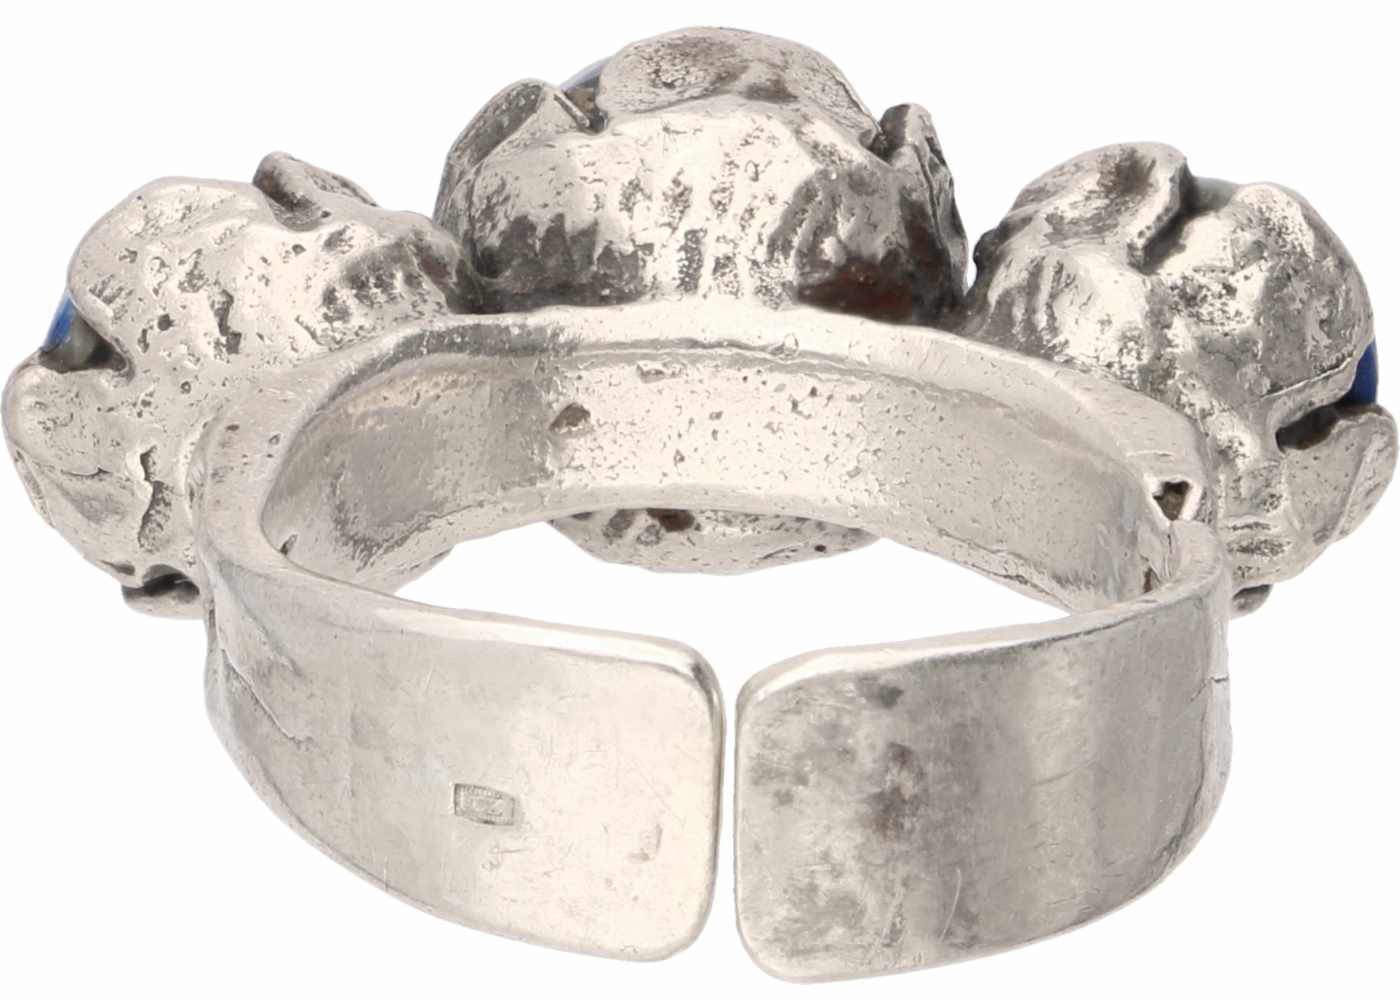 Ring silver, lapis lazuli - 925/1000. - Image 2 of 2